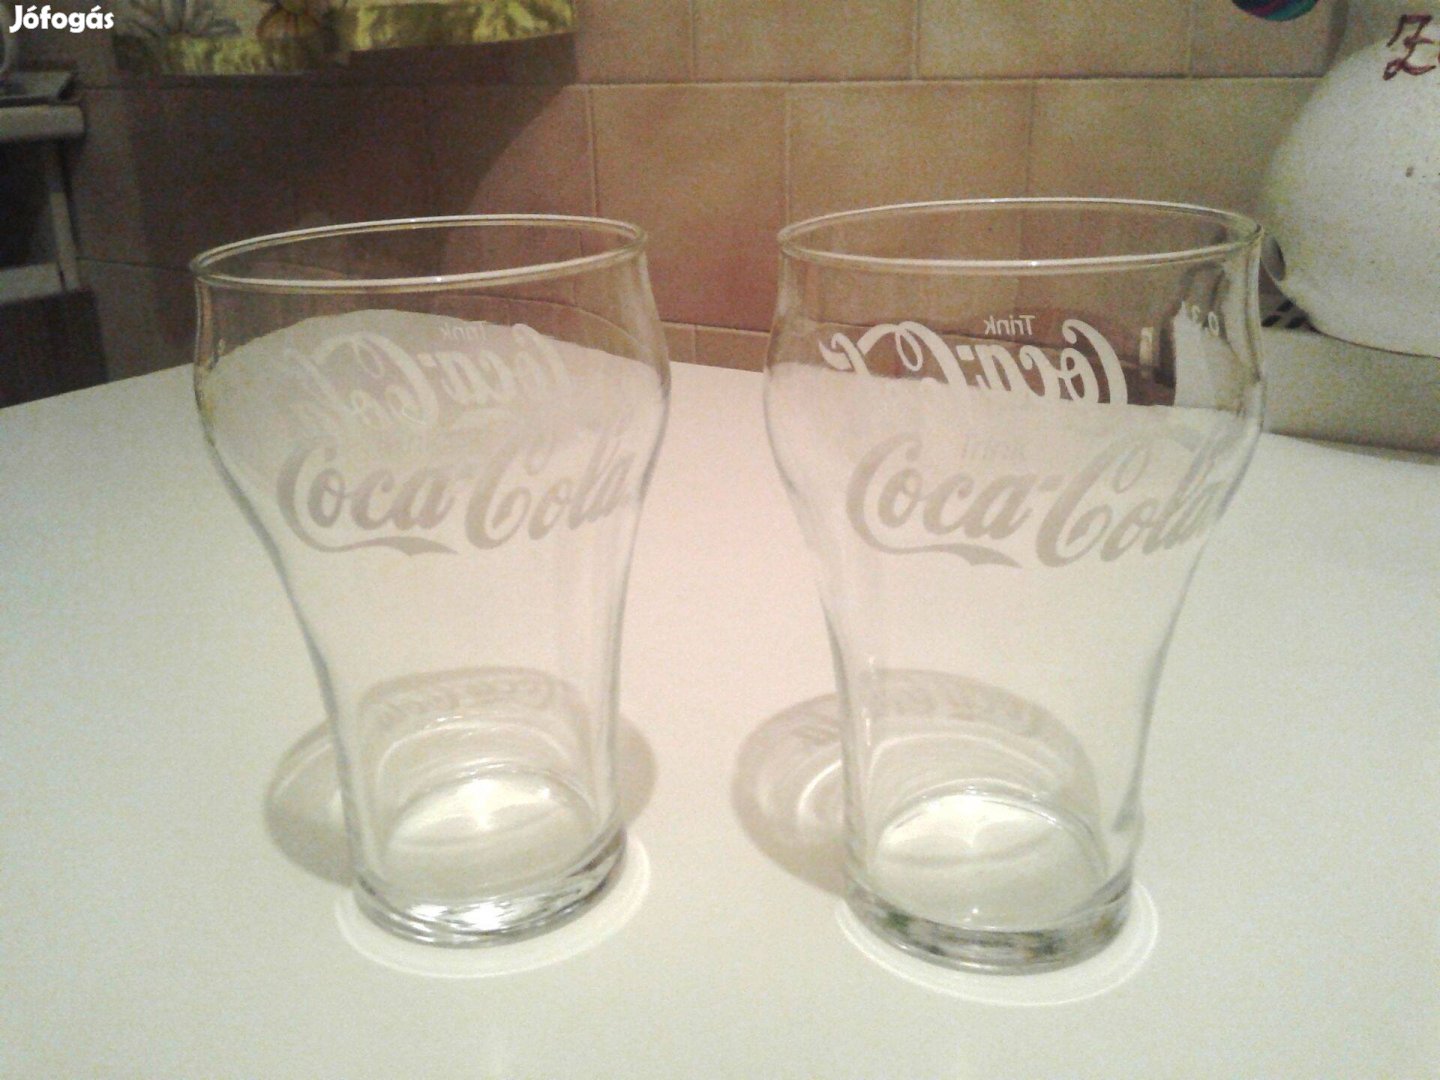 2 db Coca Colás 0,3 dl-es üvegpohár egyben 2 200 Ft